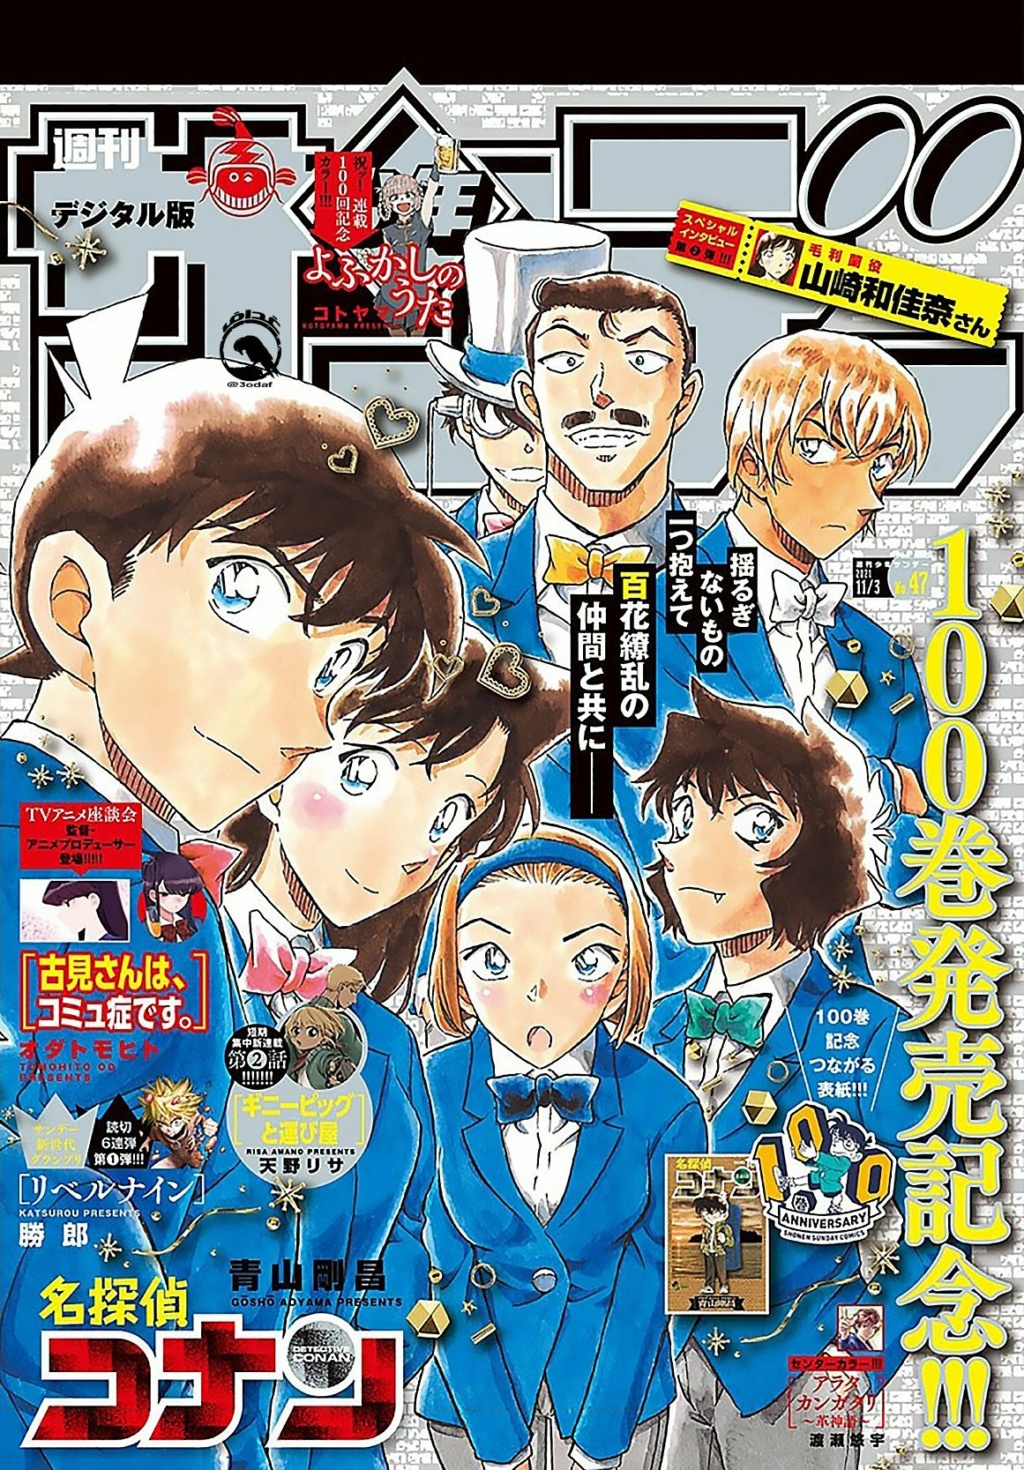 Les couvertures "Détective Conan" et "Magic Kaito" du Weekly Shōnen Sunday et du Shōnen Sunday Super Fb040m10